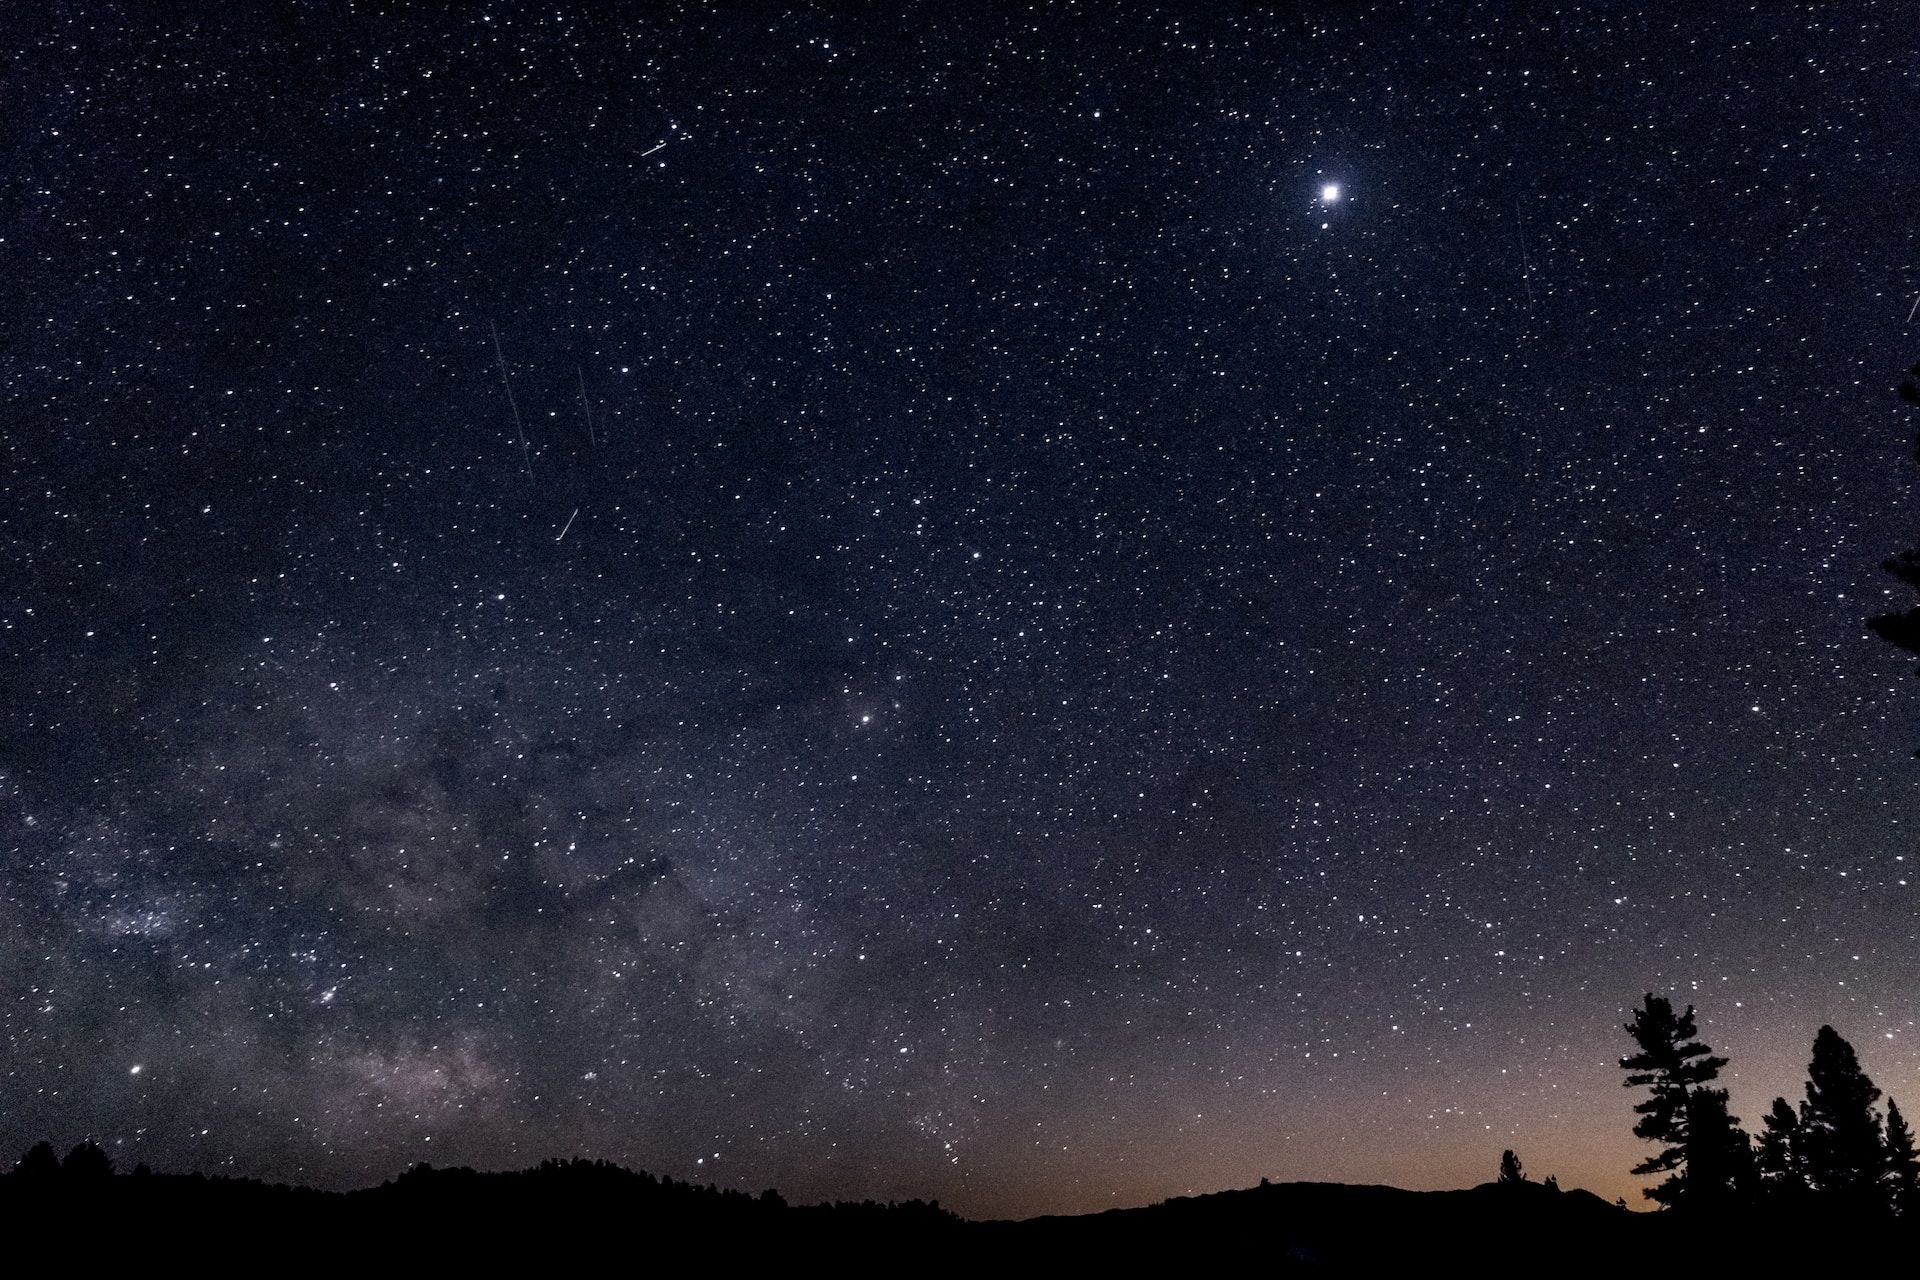 ciel nocturne étoilé avec une planète dans un coin - Photo by Karl Anderson on https://unsplash.com/photos/HVGn7_dMNX0